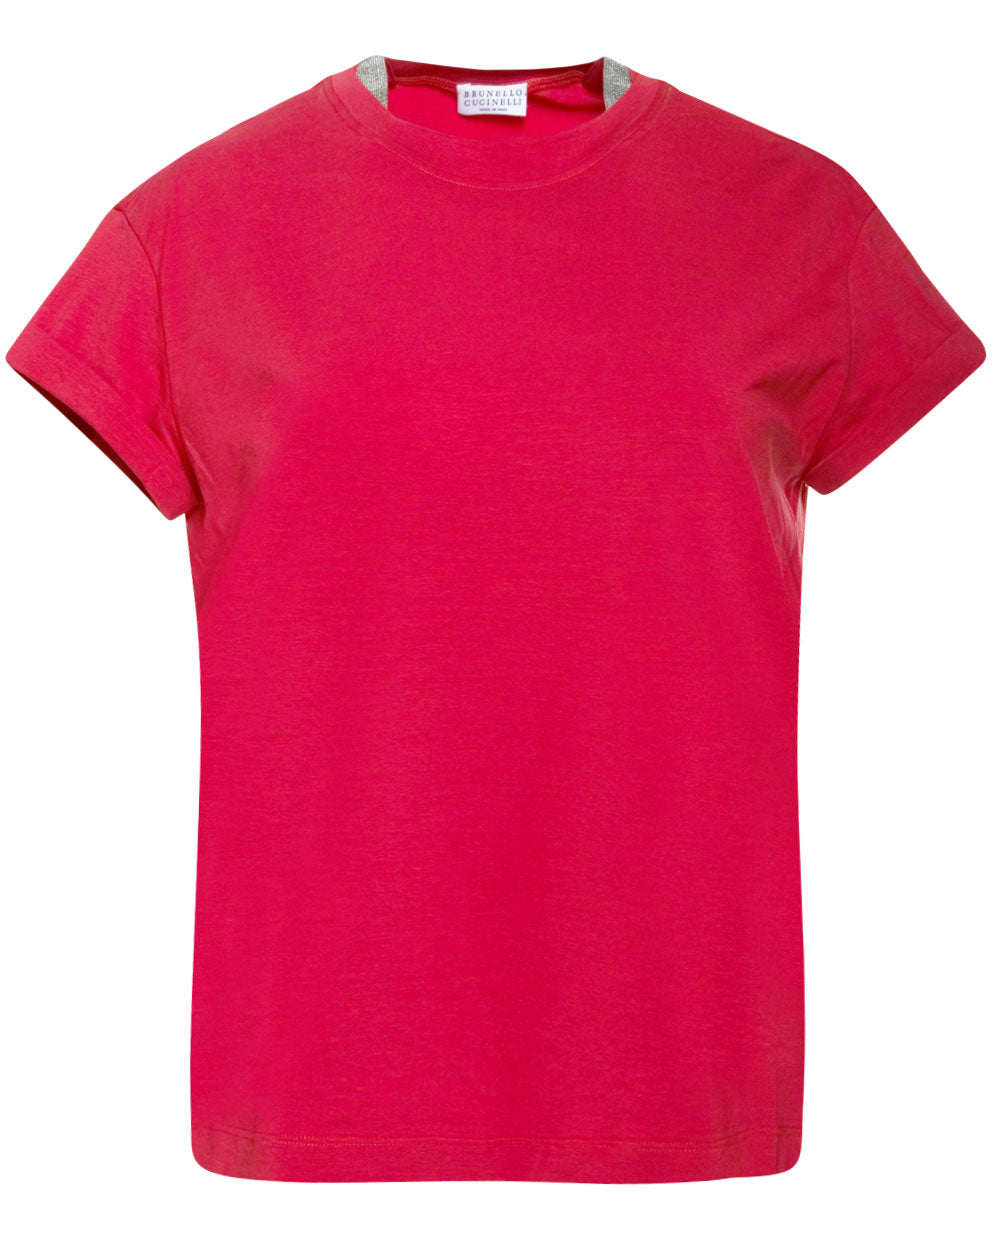 Chili Red Monili Collar T-Shirt